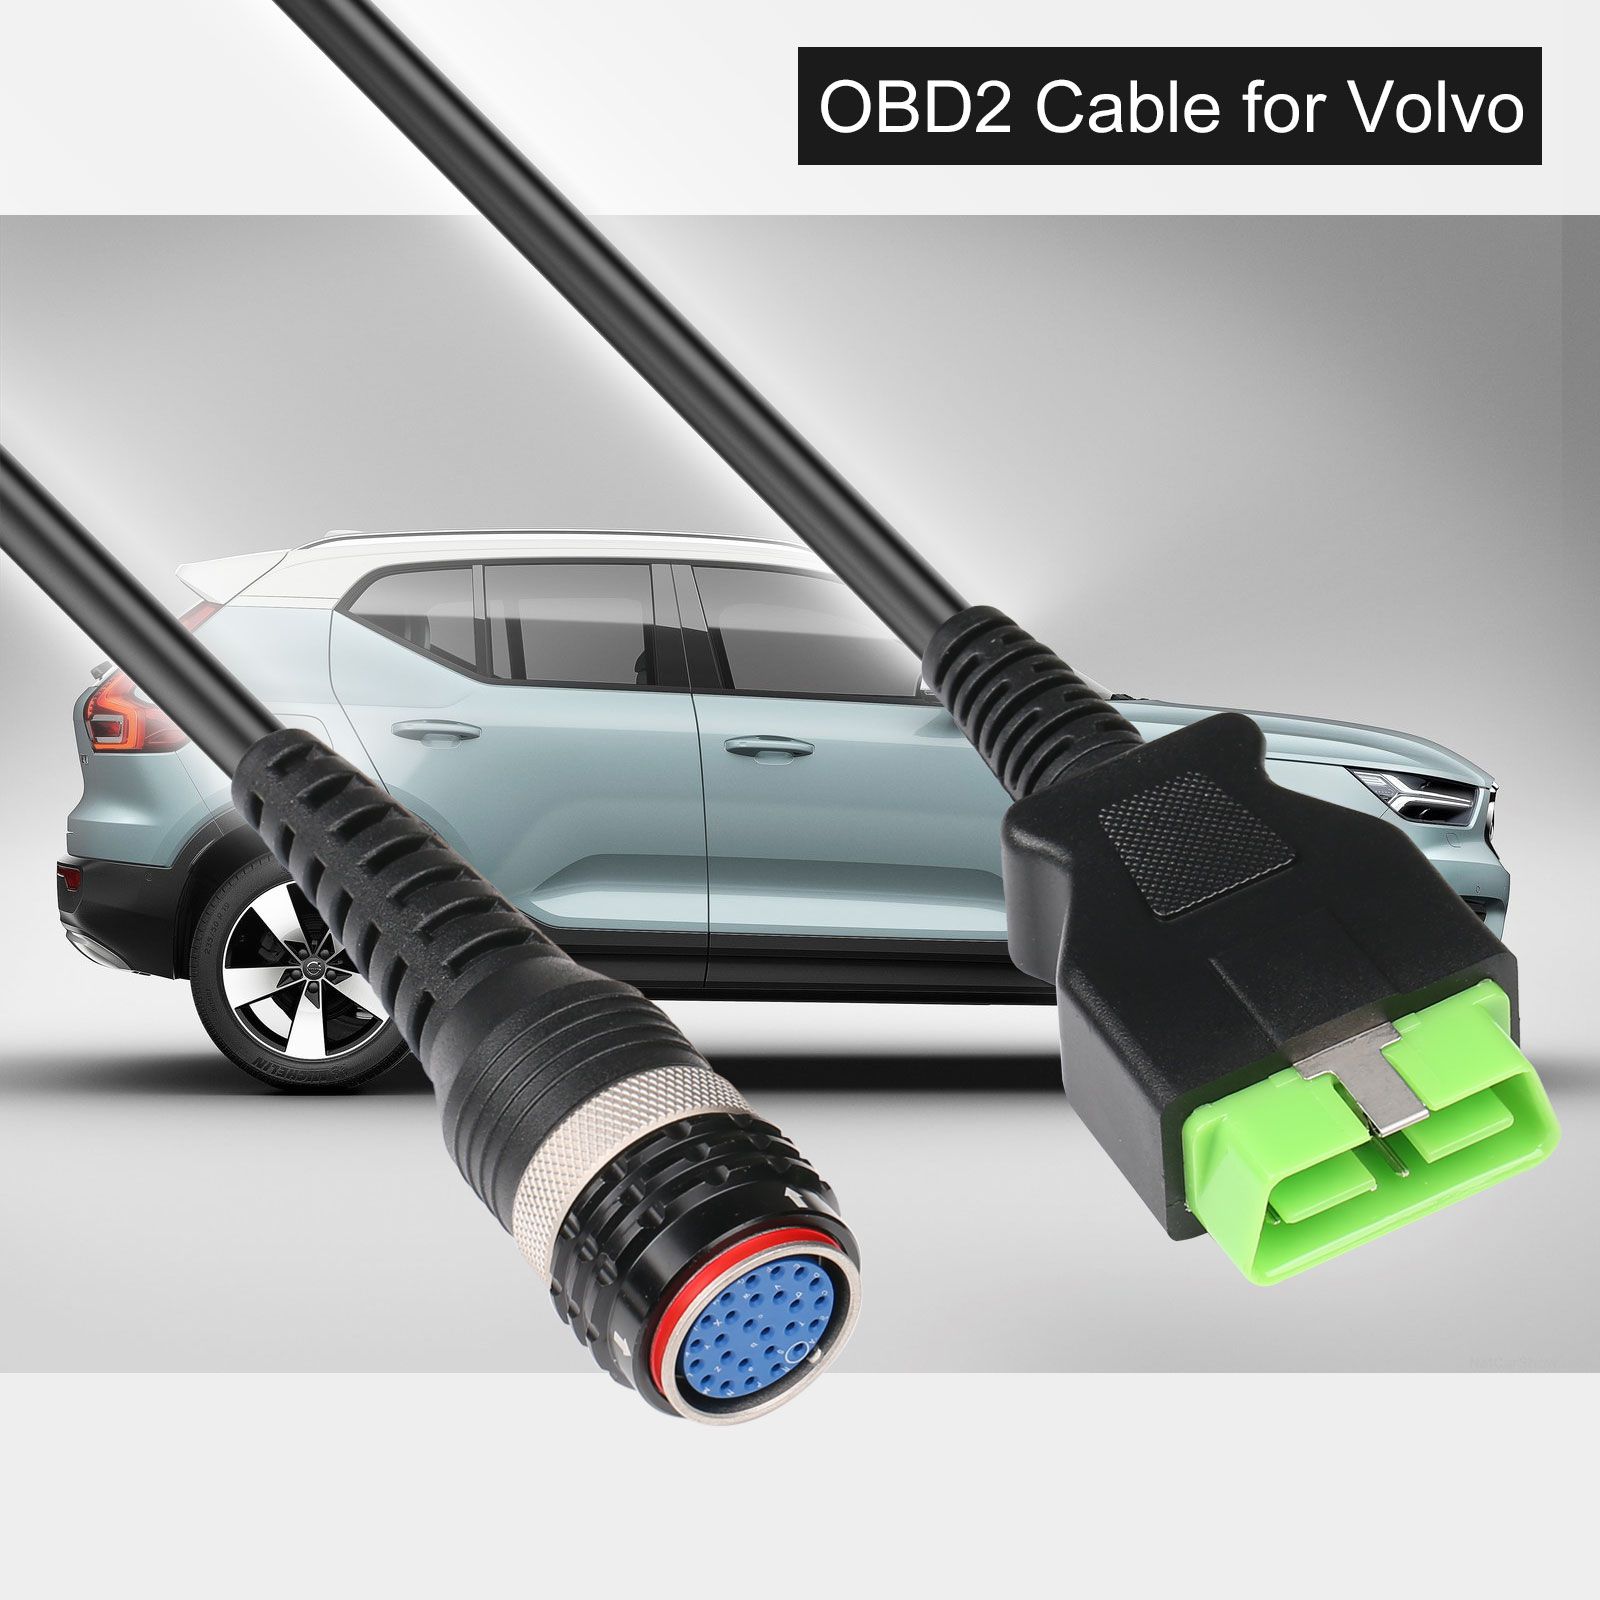 Volvo 88890304 vocom Green Edition obd2 cable